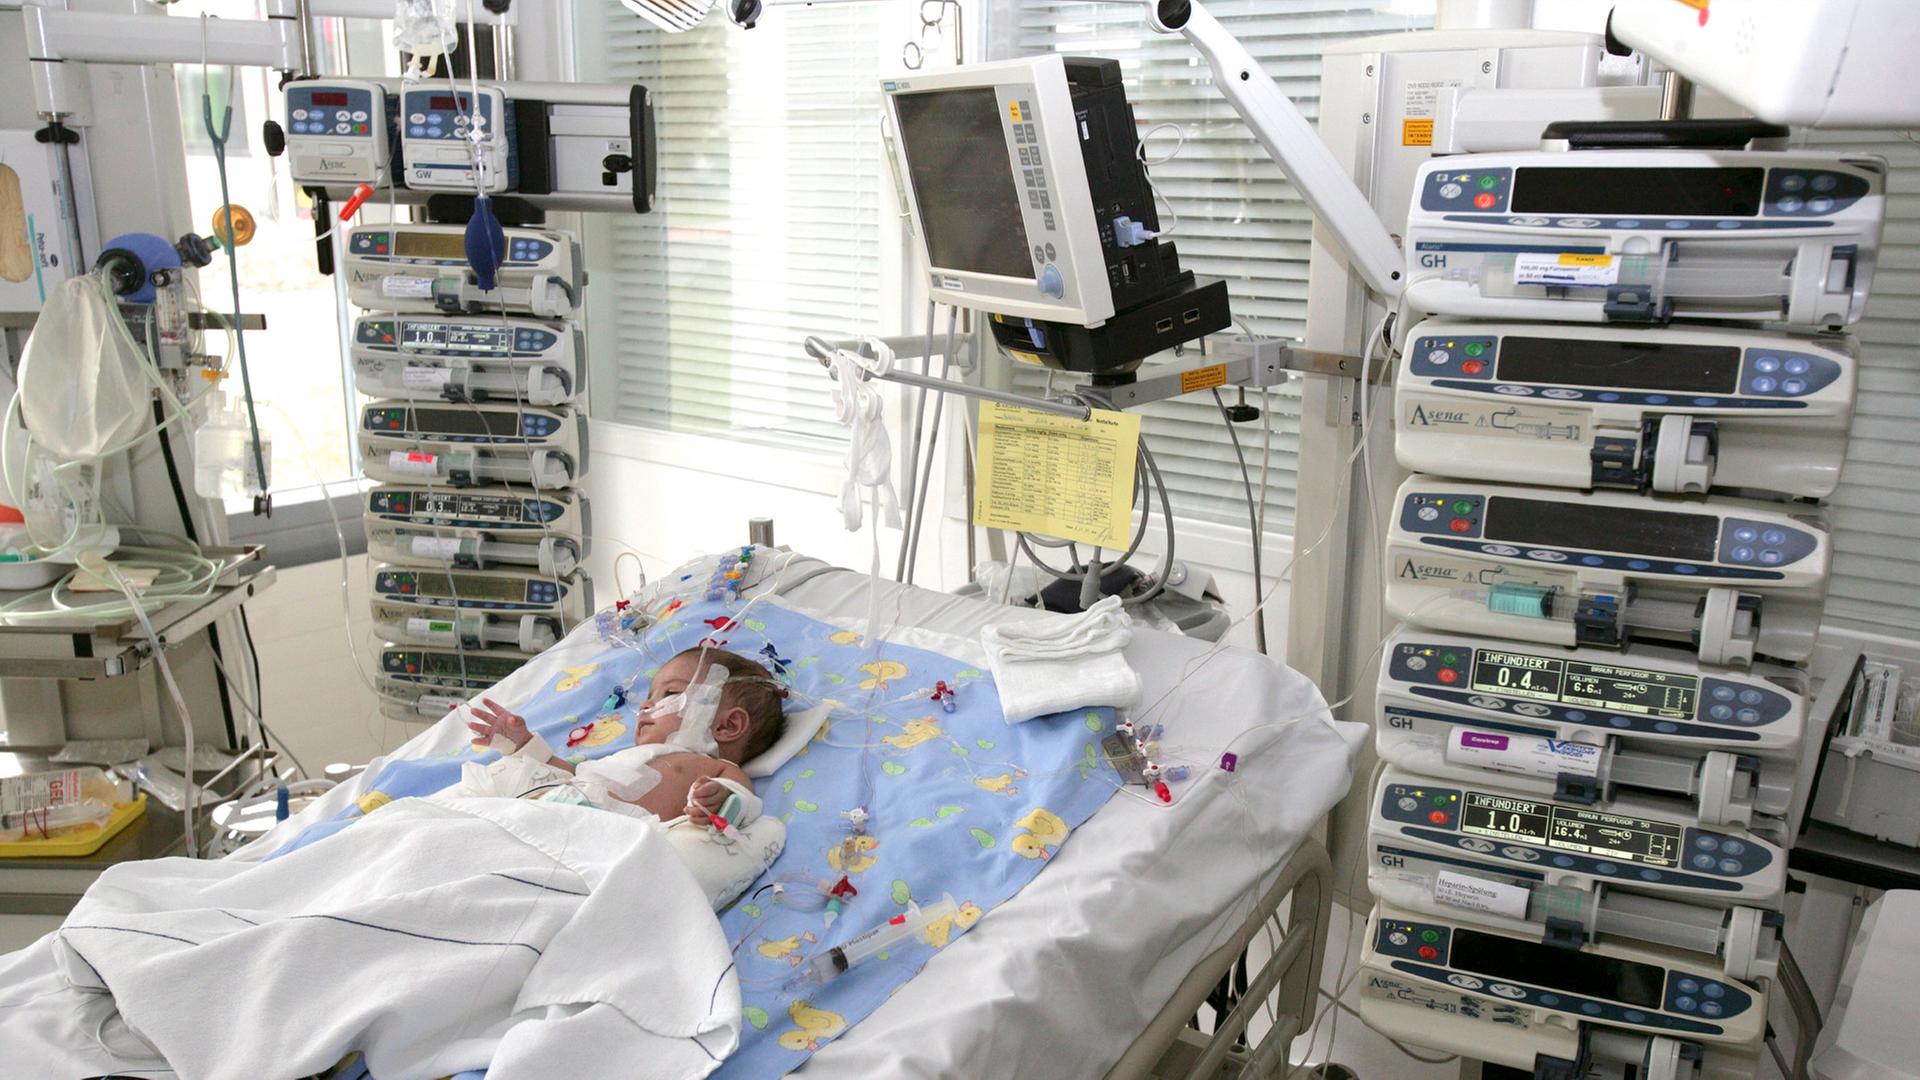 Ein Baby liegt in einem Krankenhausbett auf einer Intensivstation. Um das Bett sind medizinische Geräte aufgebaut.